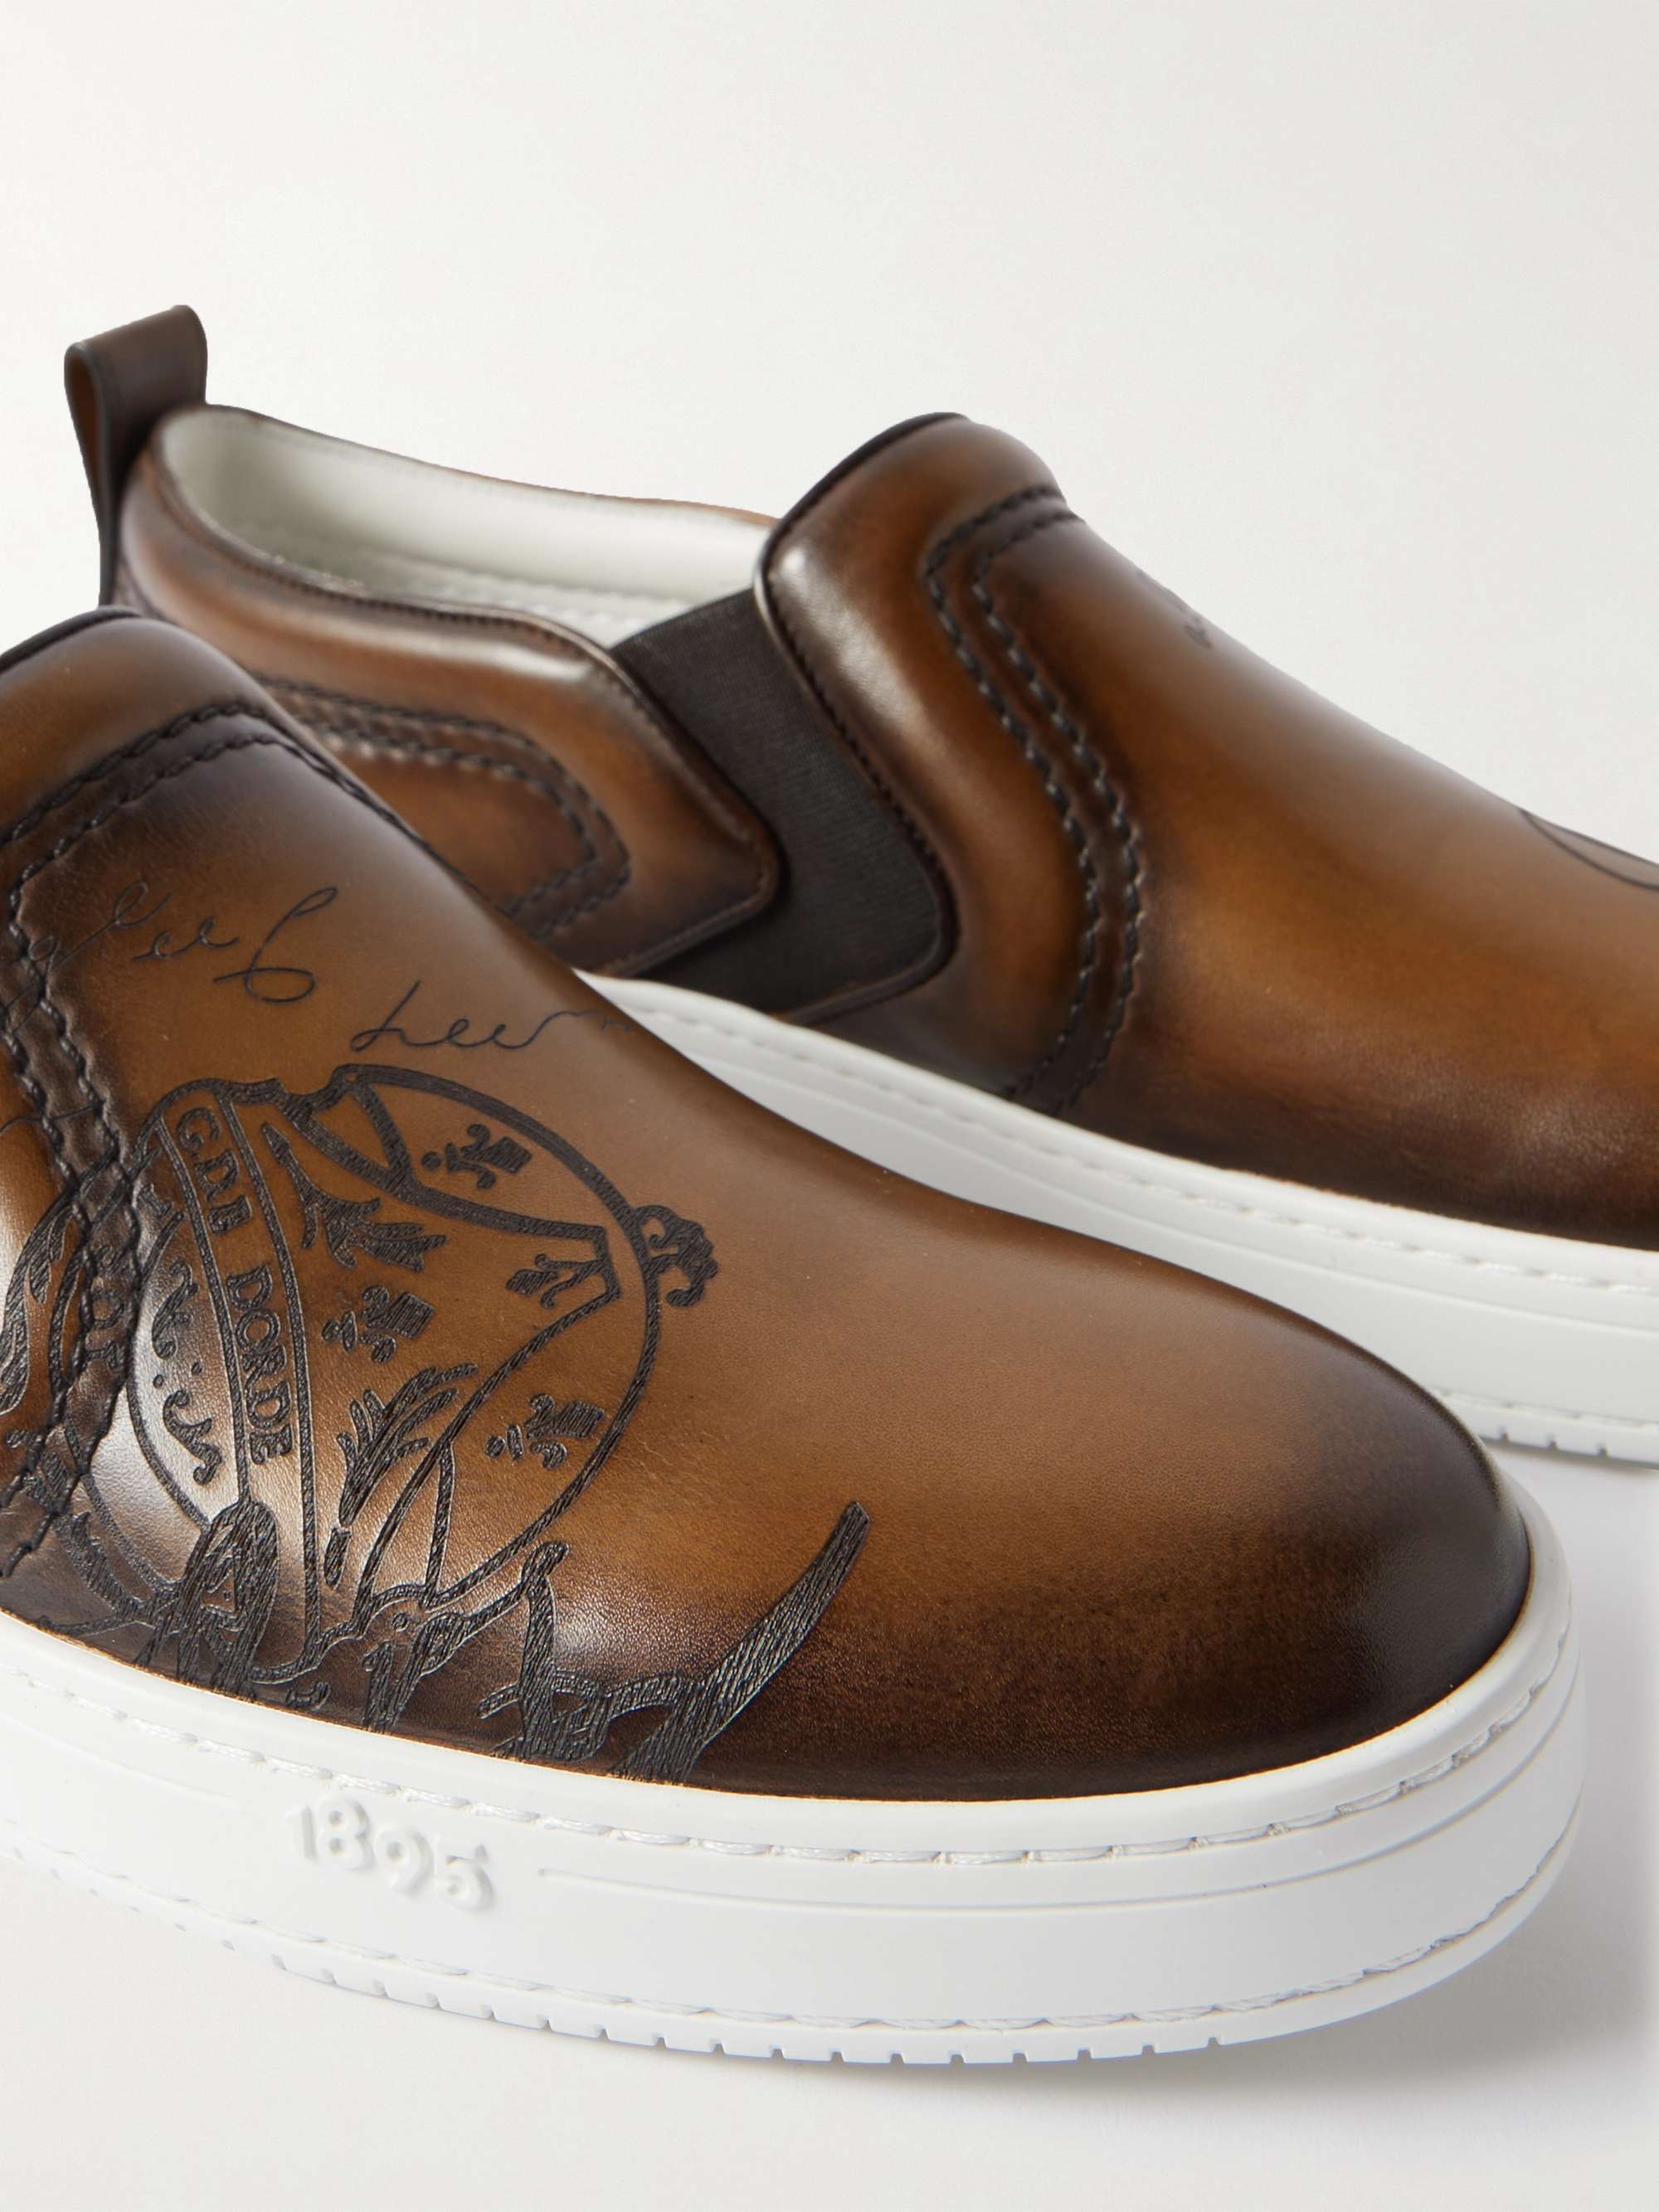 BERLUTI Scritto Venezia Leather Slip-On Sneakers